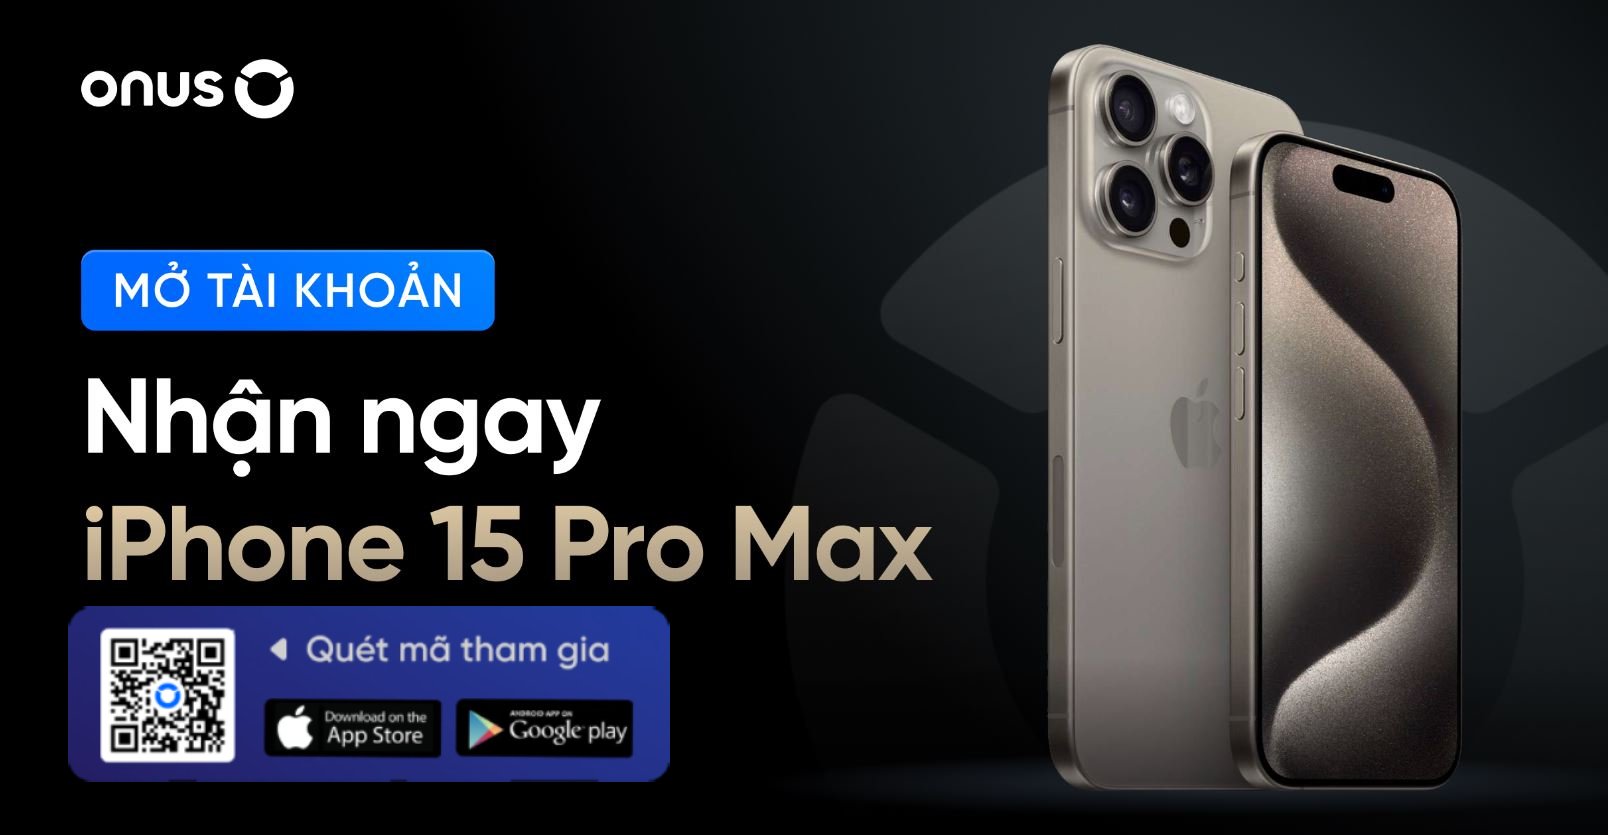 ONUS Iphone 15 pro max.JPG